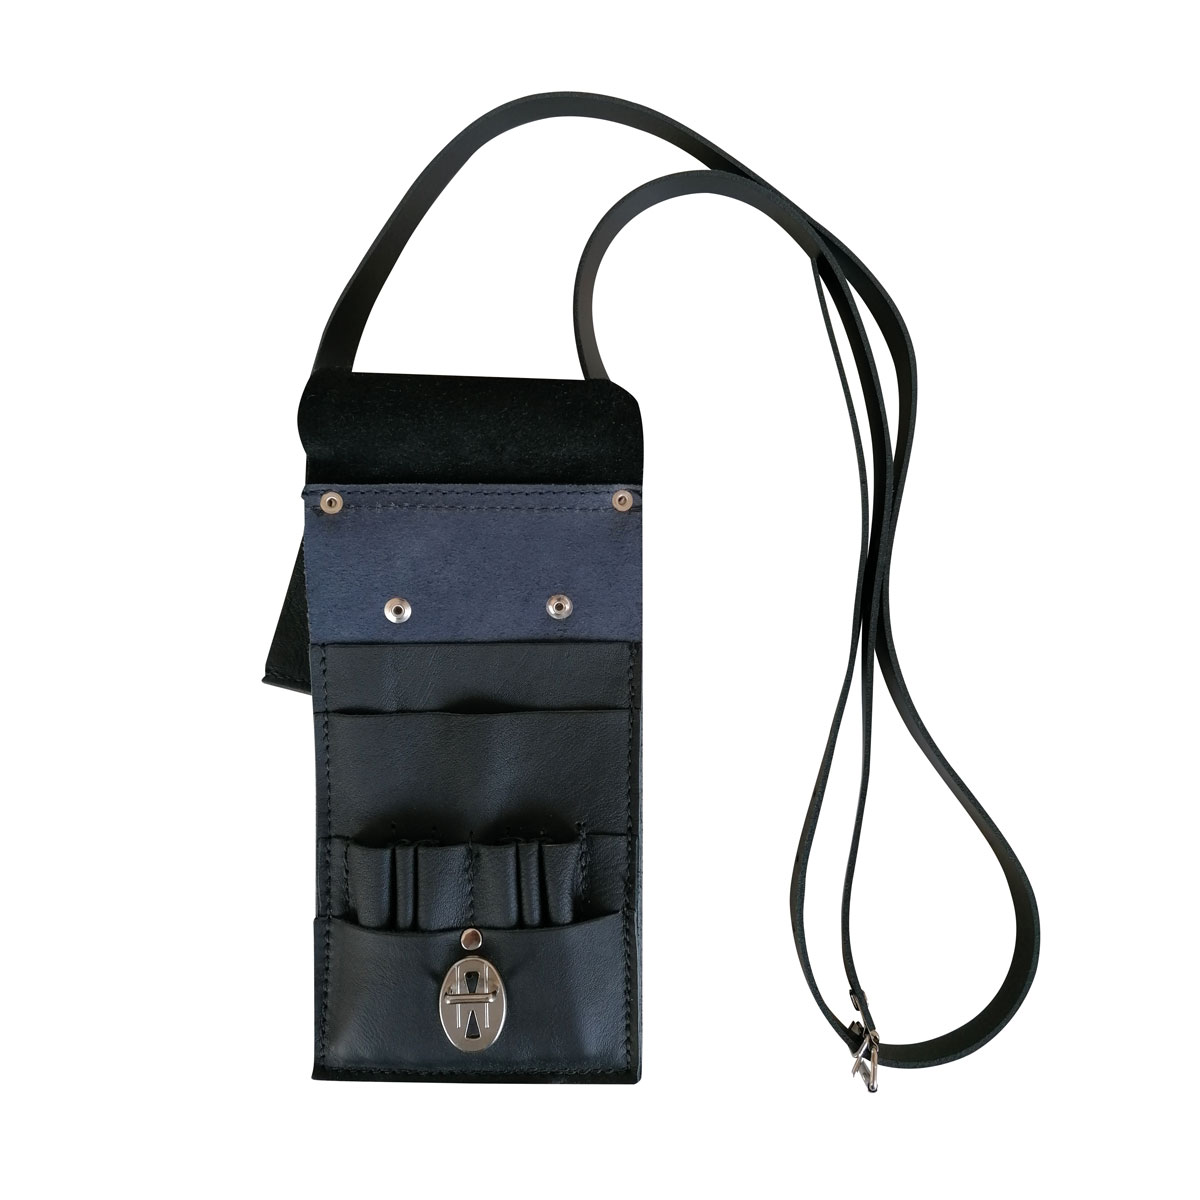 Außendienst-Feldbesteck-Tasche aus Leder 22 x 12 cm mit Klappe